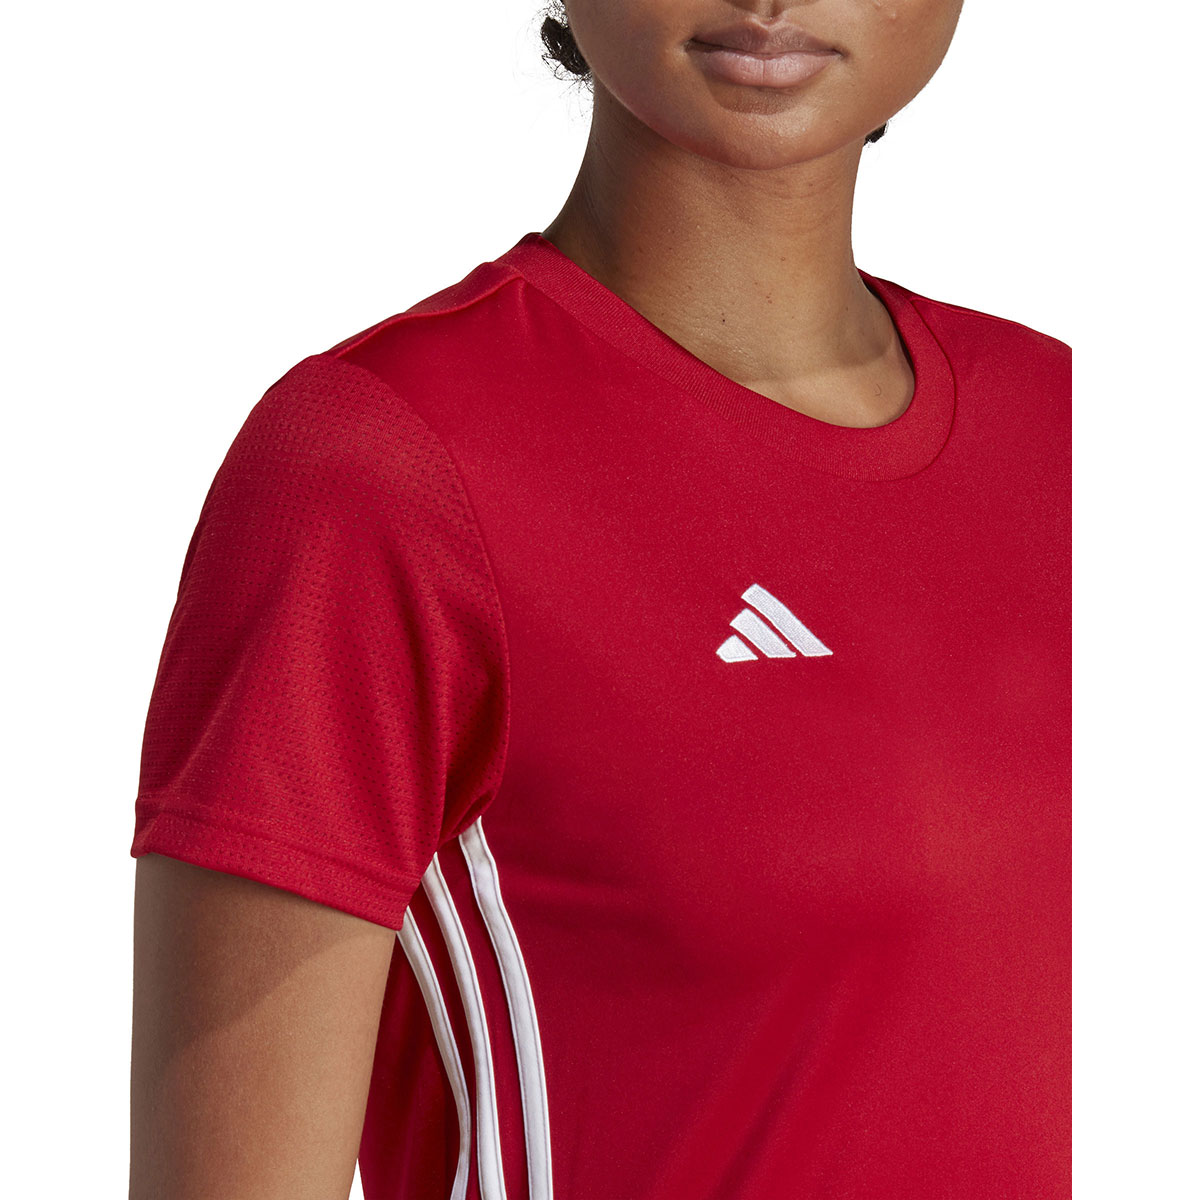 Adidas Damen Trikot Tabela 23 rot-weiß